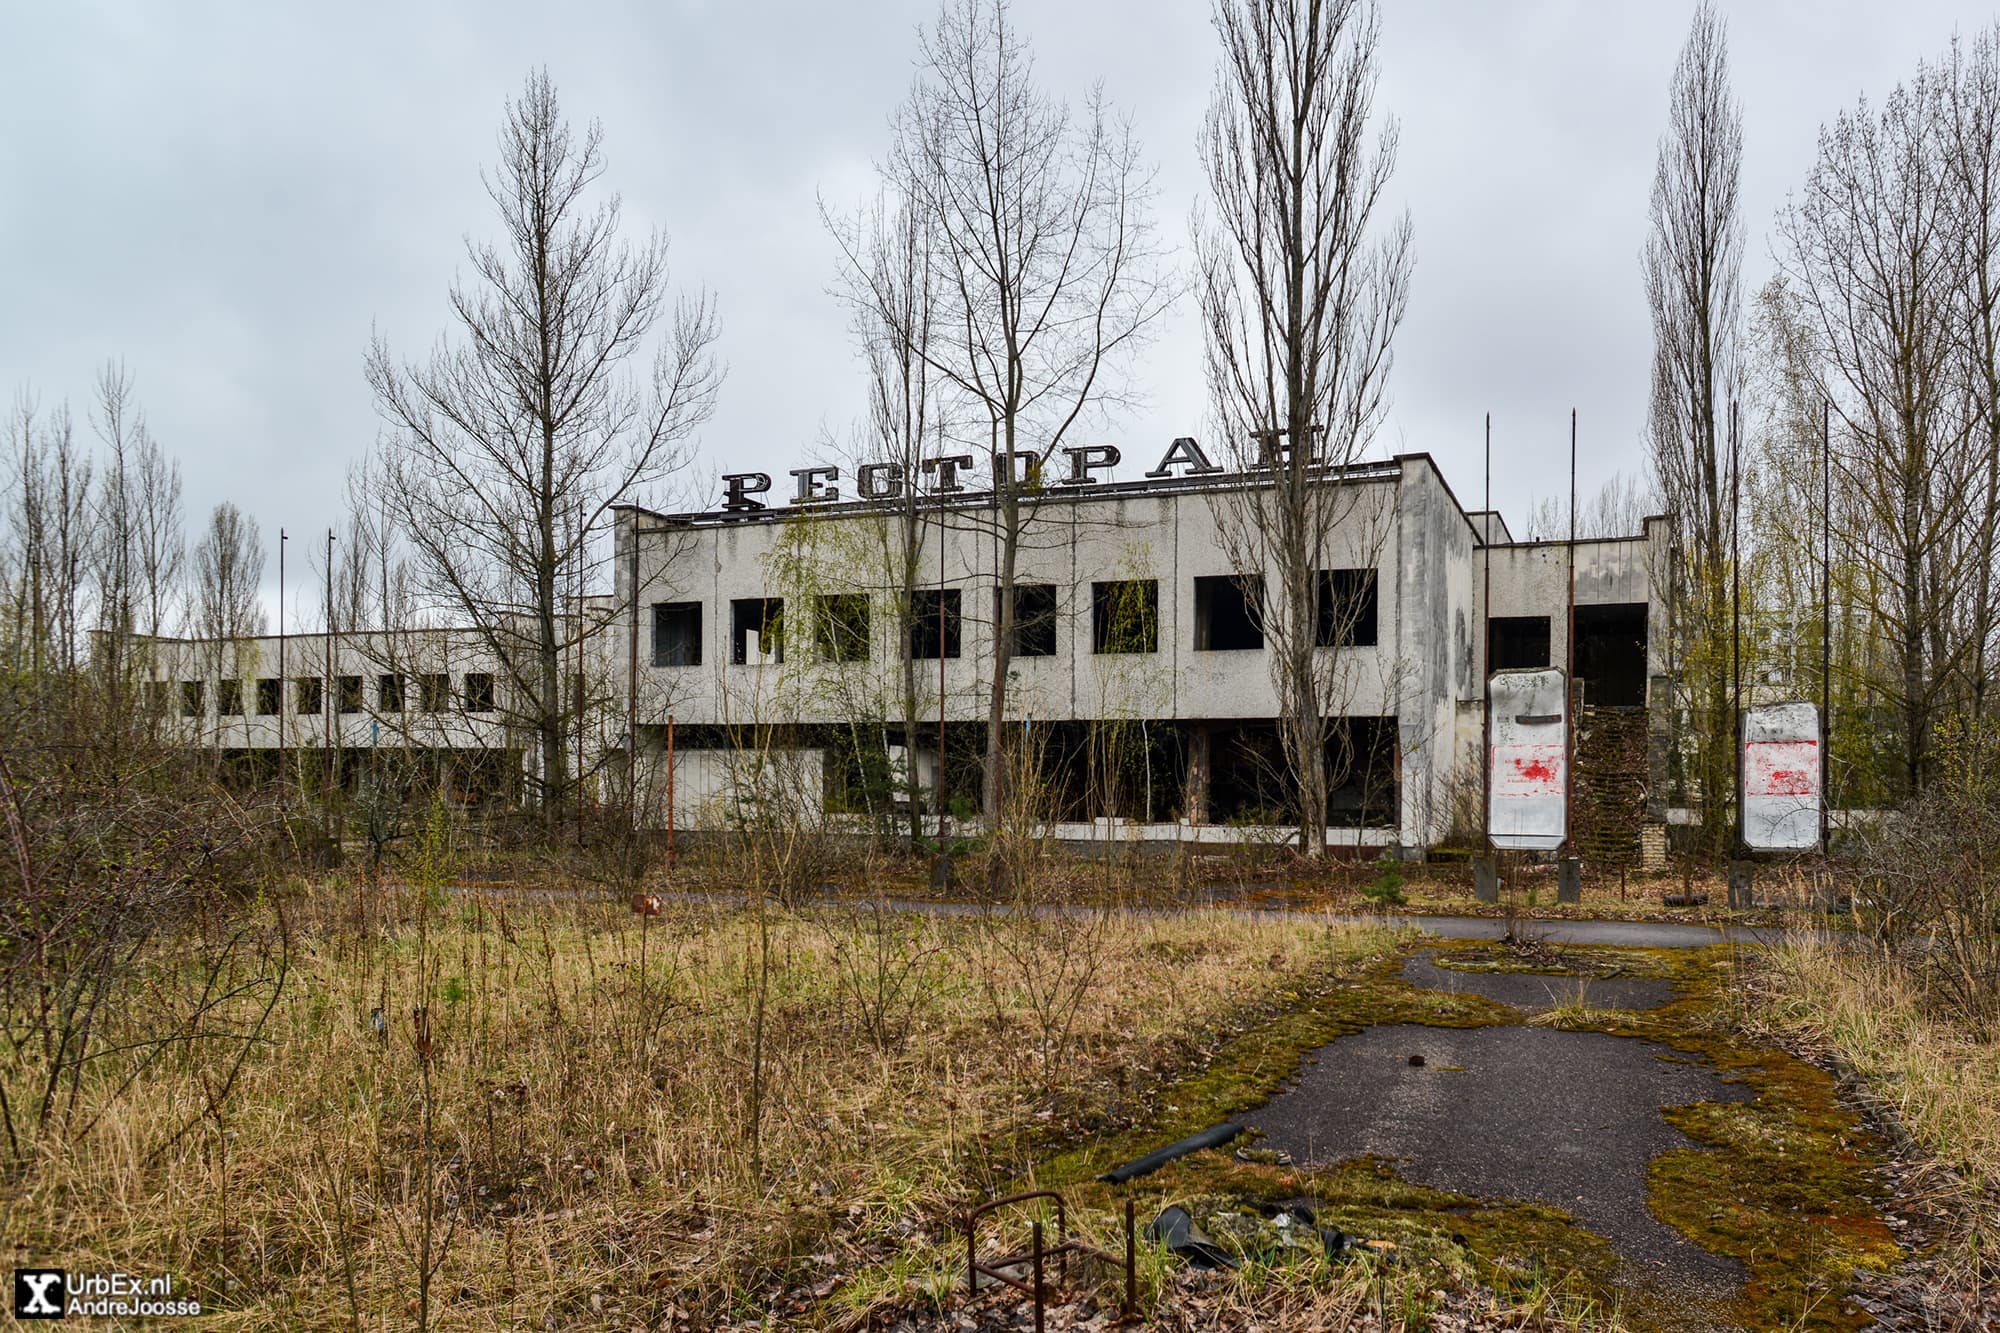 Pripyat Retail